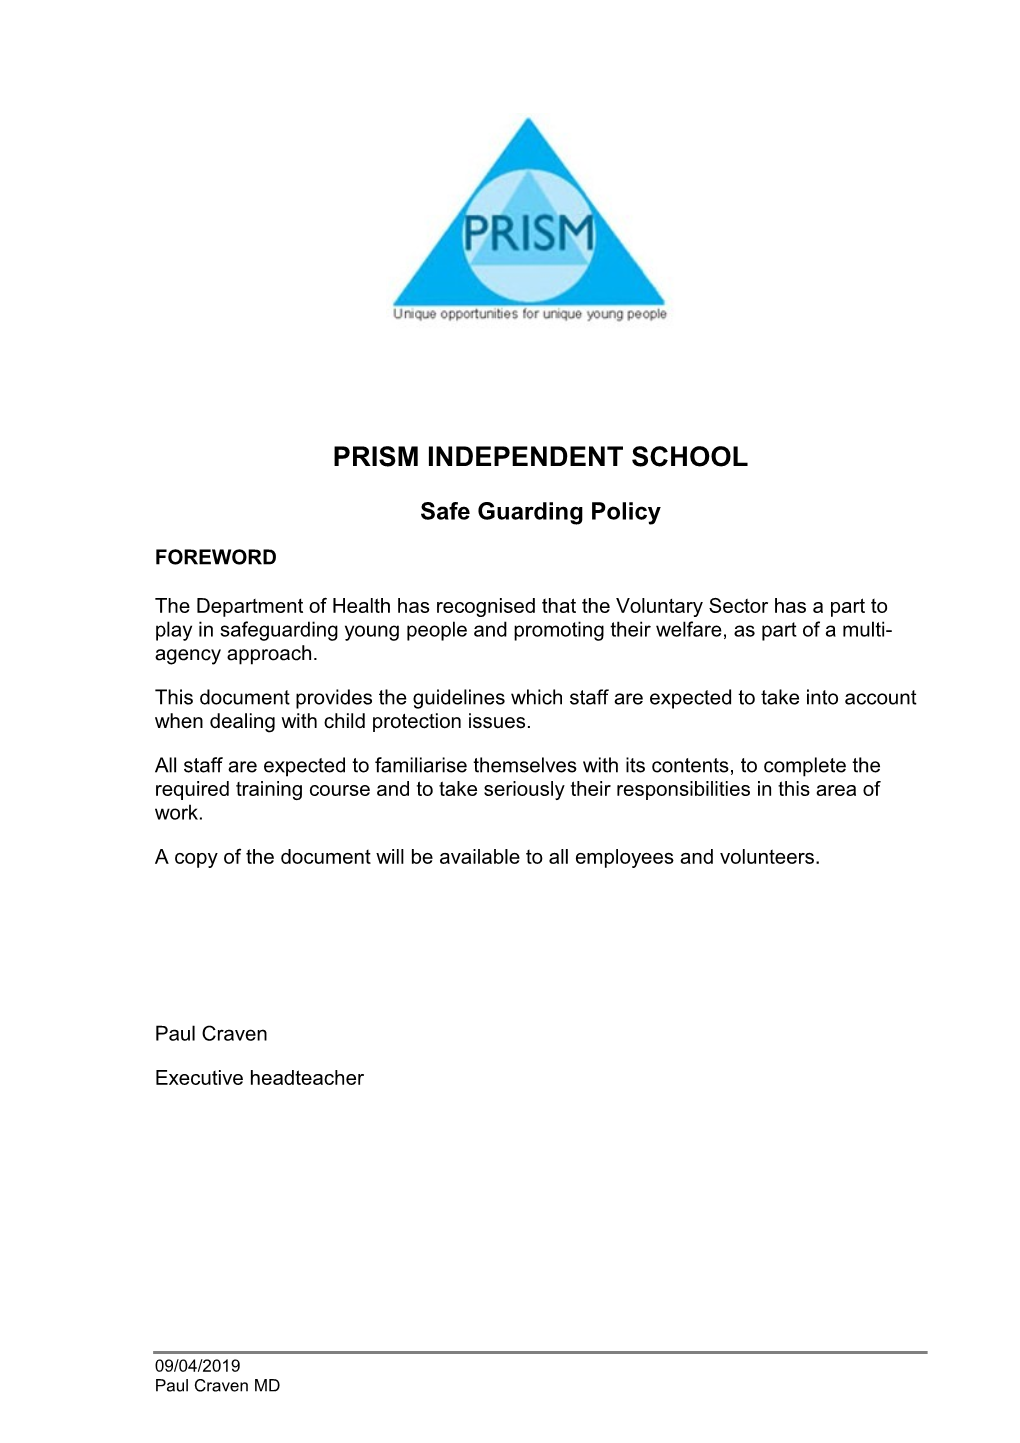 PRISM Independent School